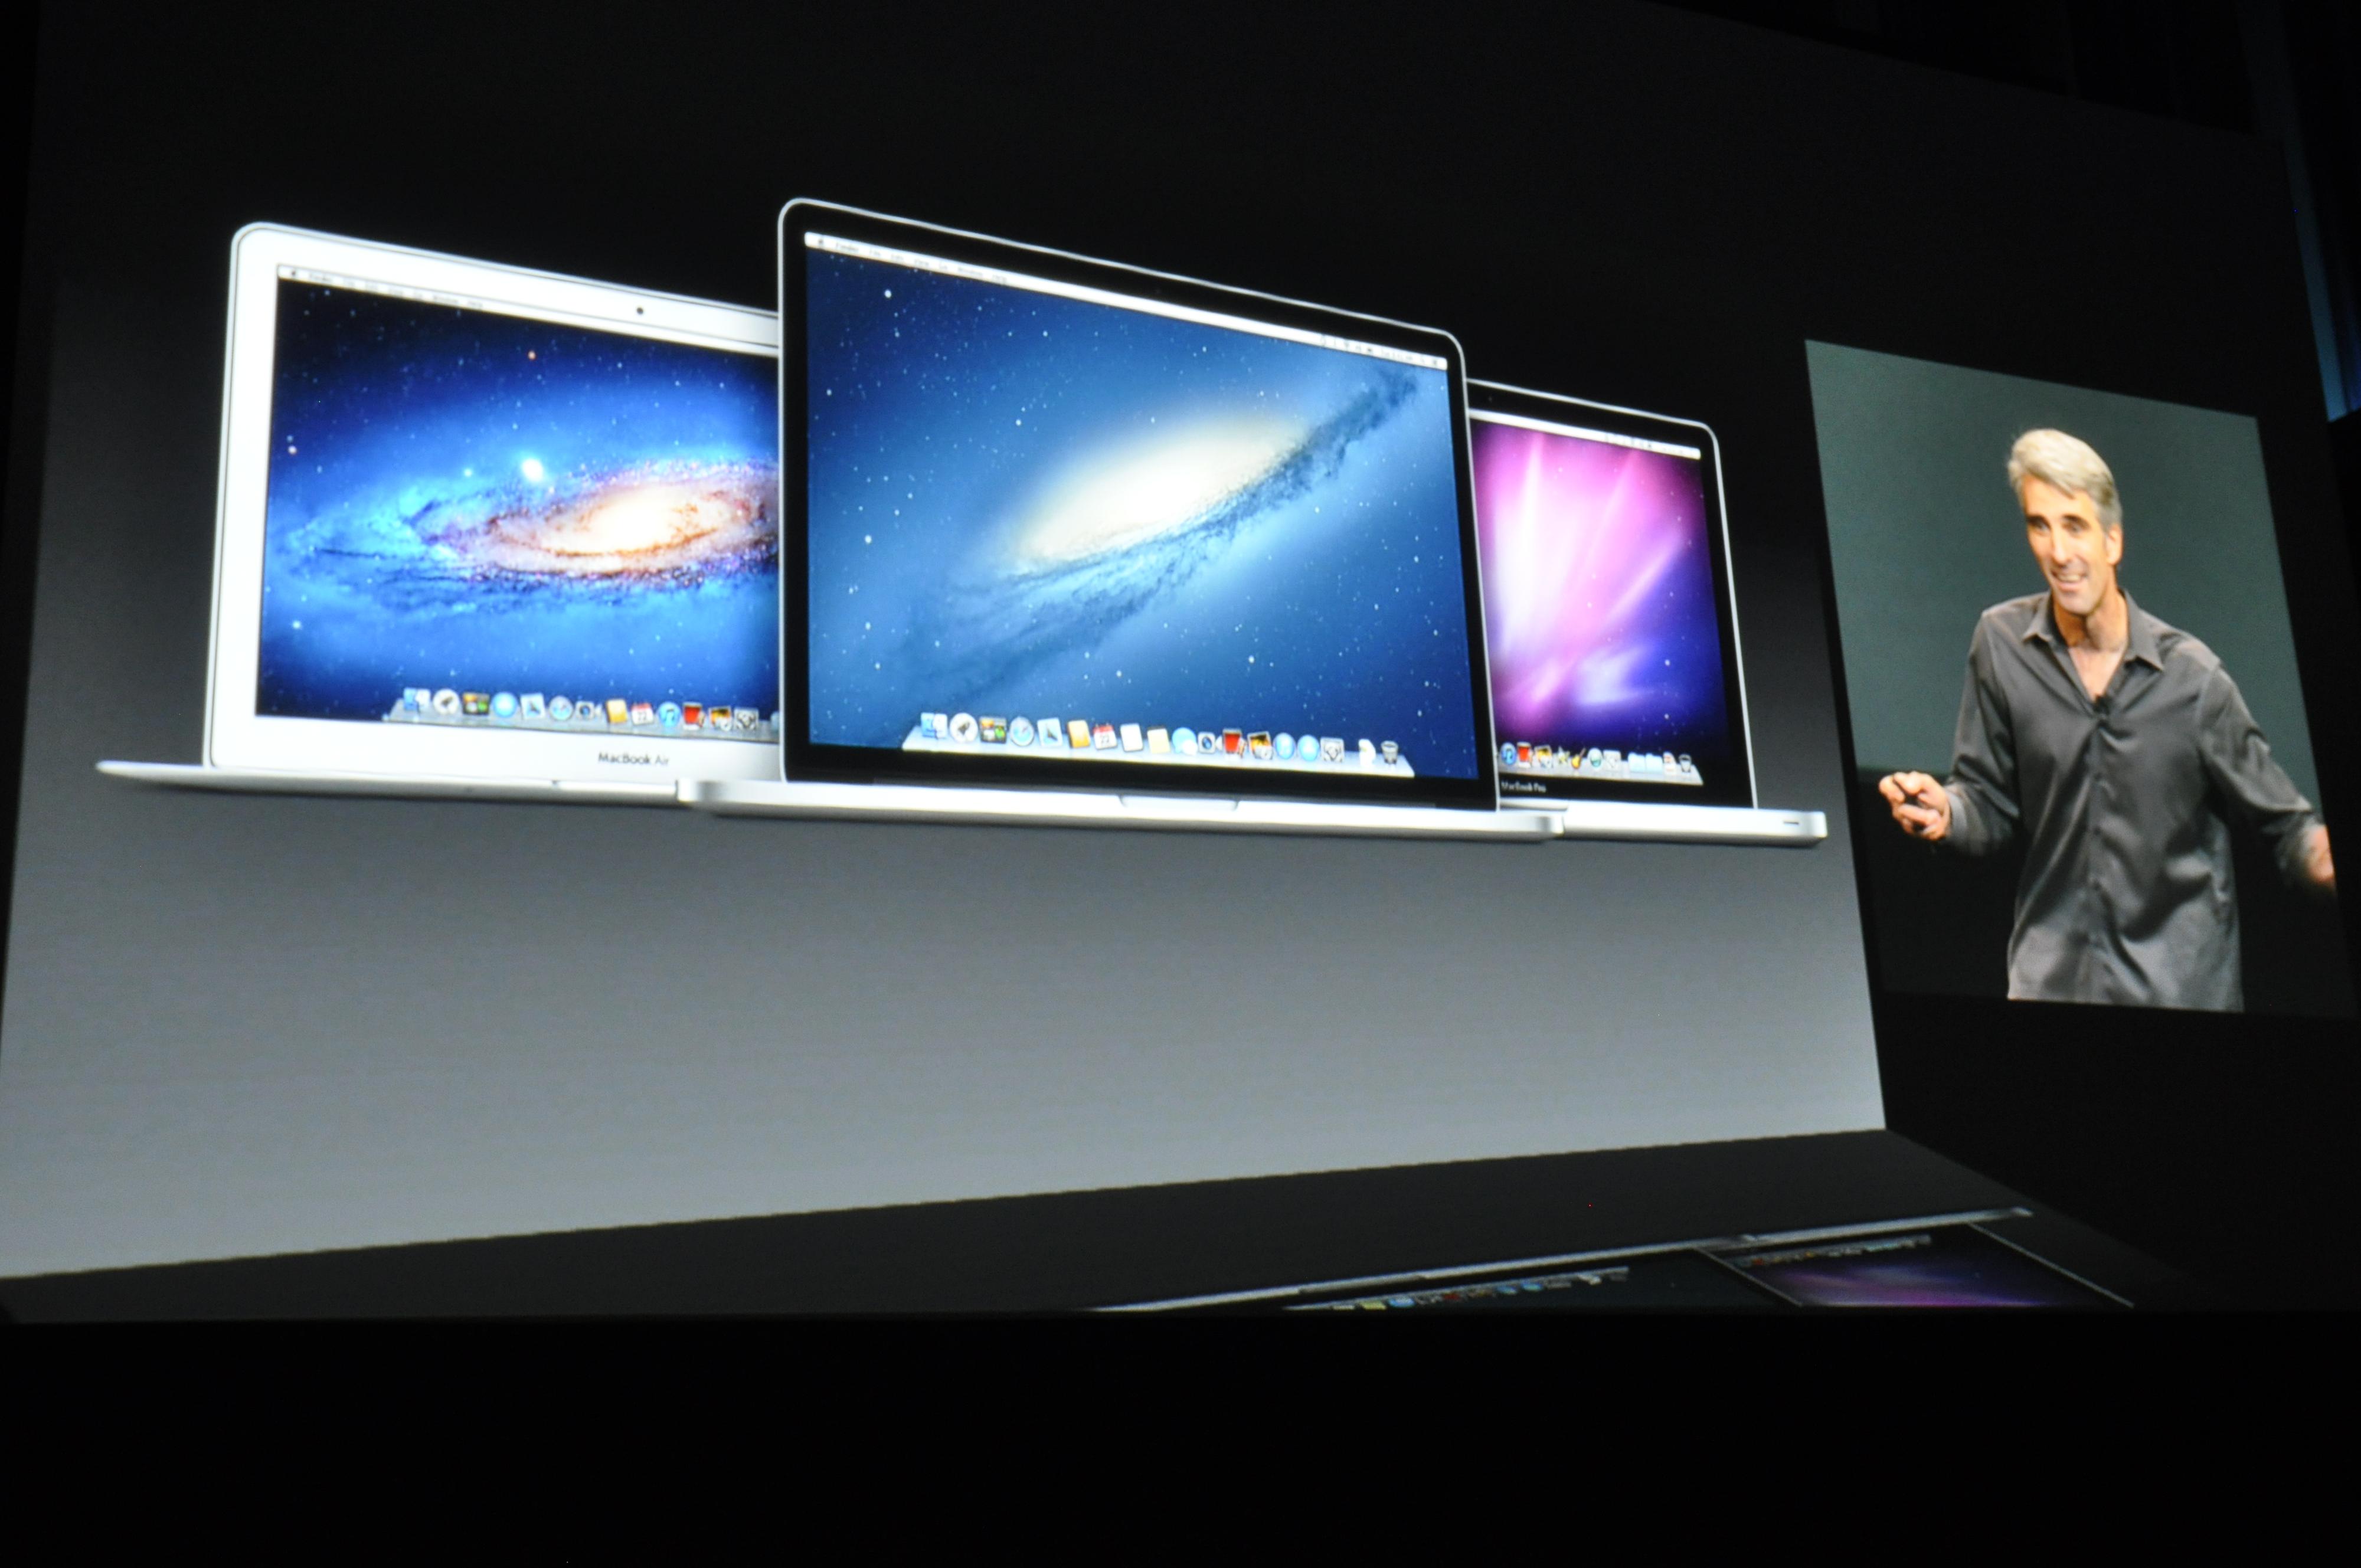 Mac-brukere kan oppgradere fra og med i dag. Foto: Finn Jarle Kvalheim, Amobil.no